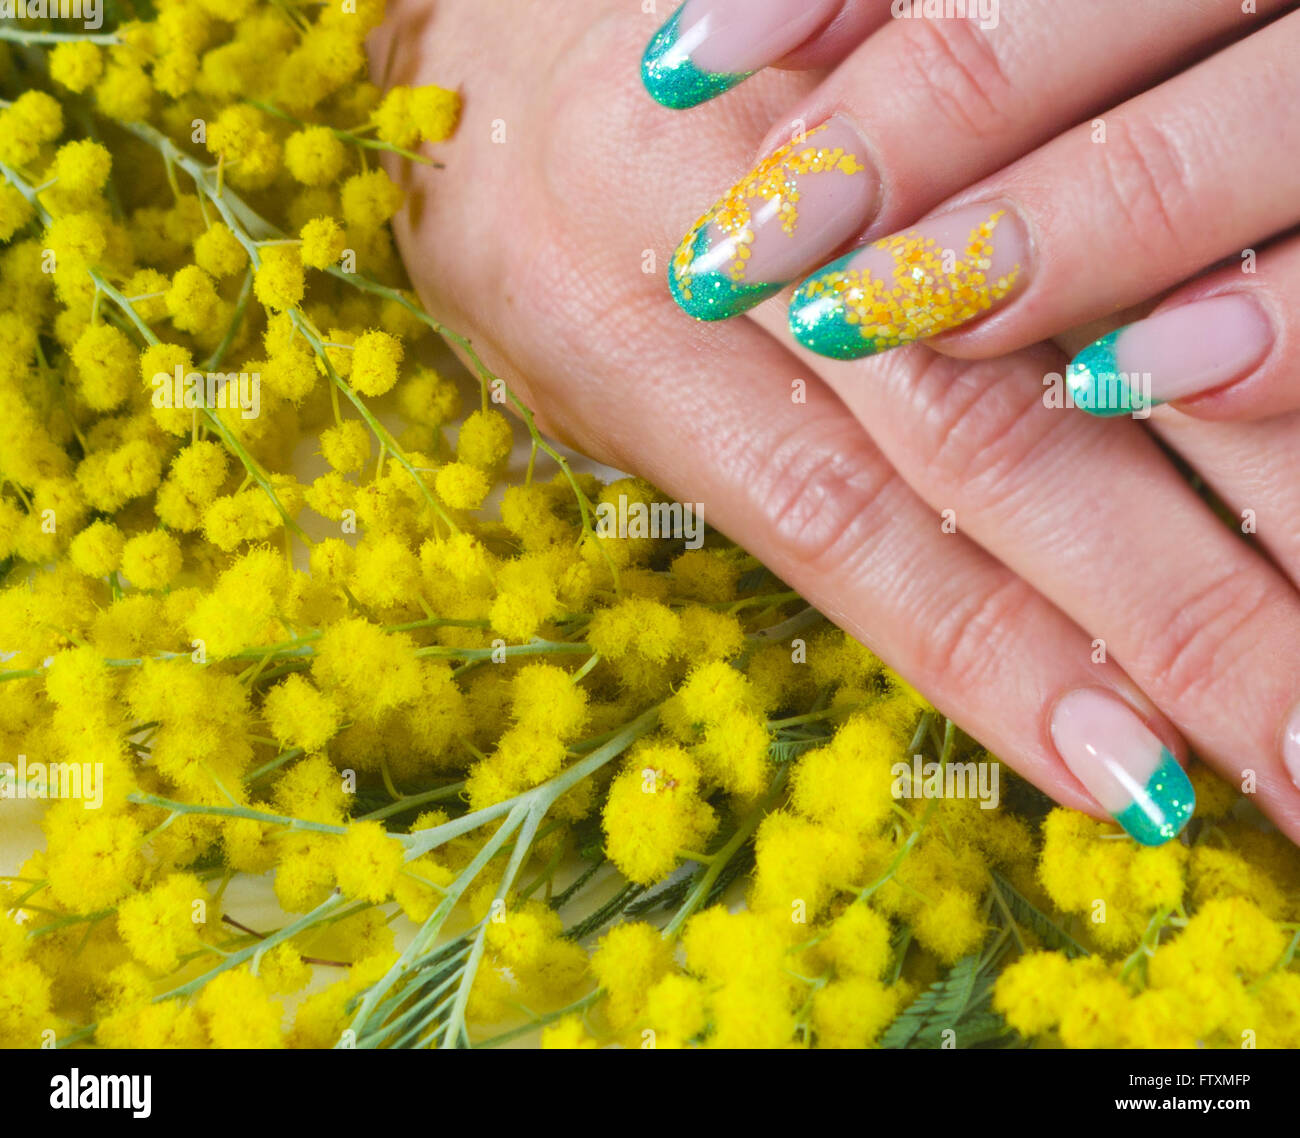 Woman's hands avec nail art design Banque D'Images